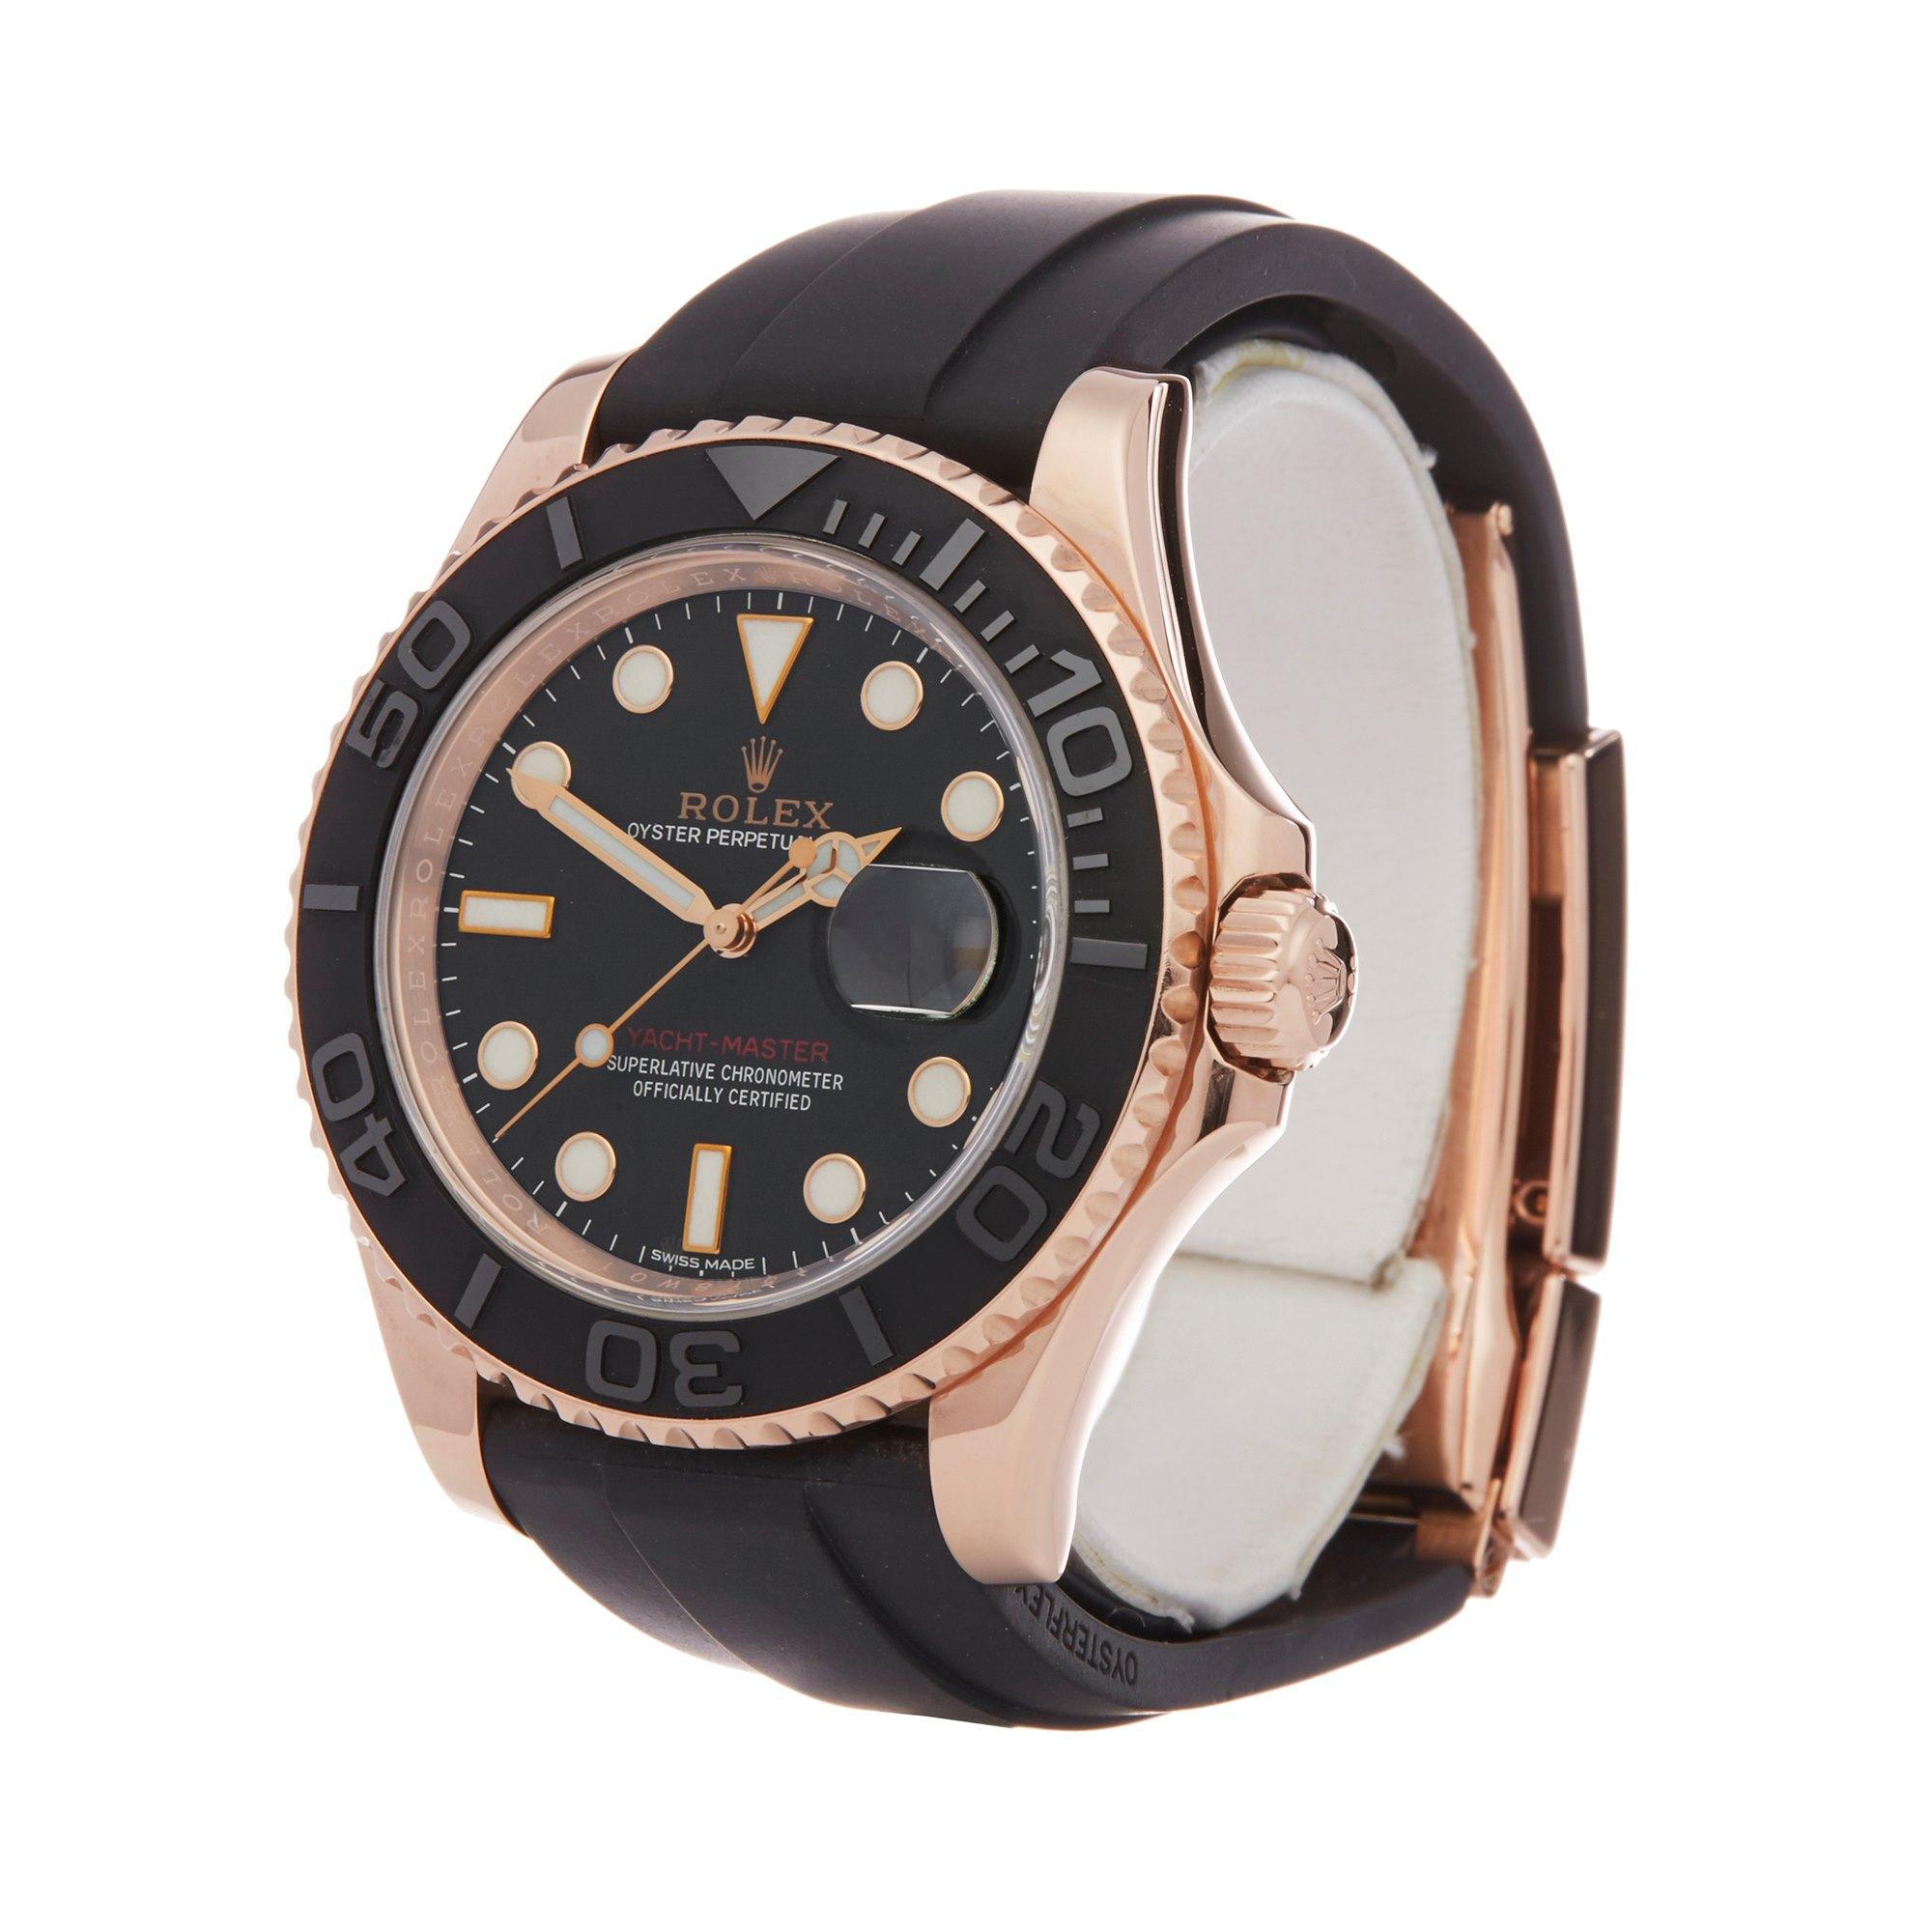 Spring bar for Rolex bracelet clasp | Omega Forums